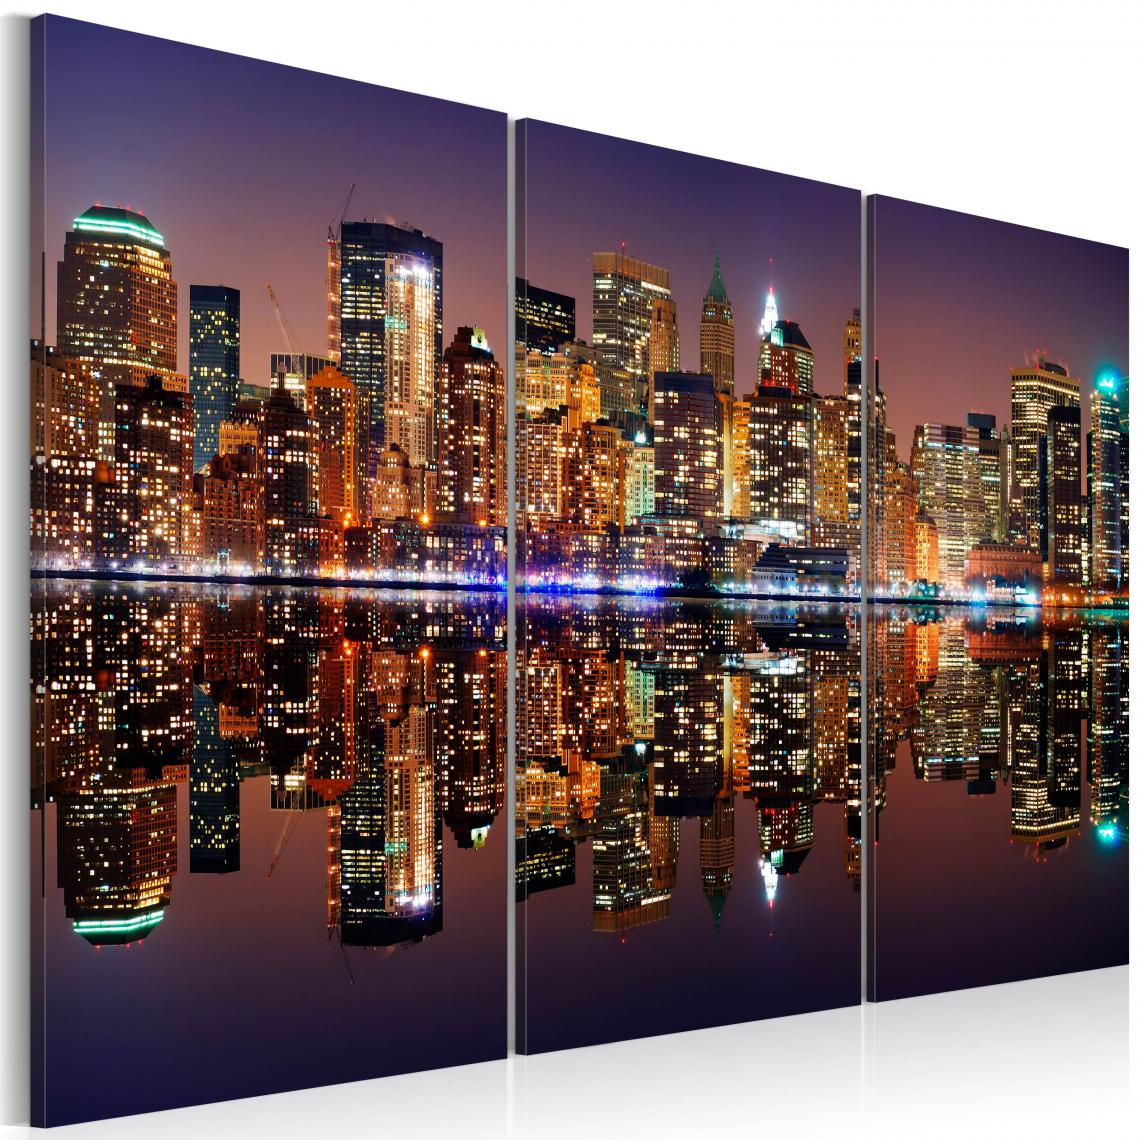 Decoshop26 - Tableau sur toile en 3 panneaux décoration murale image imprimée cadre en bois à suspendre New York avec une réflexion sur l'eau 90x60 cm 11_0007890 - Tableaux, peintures